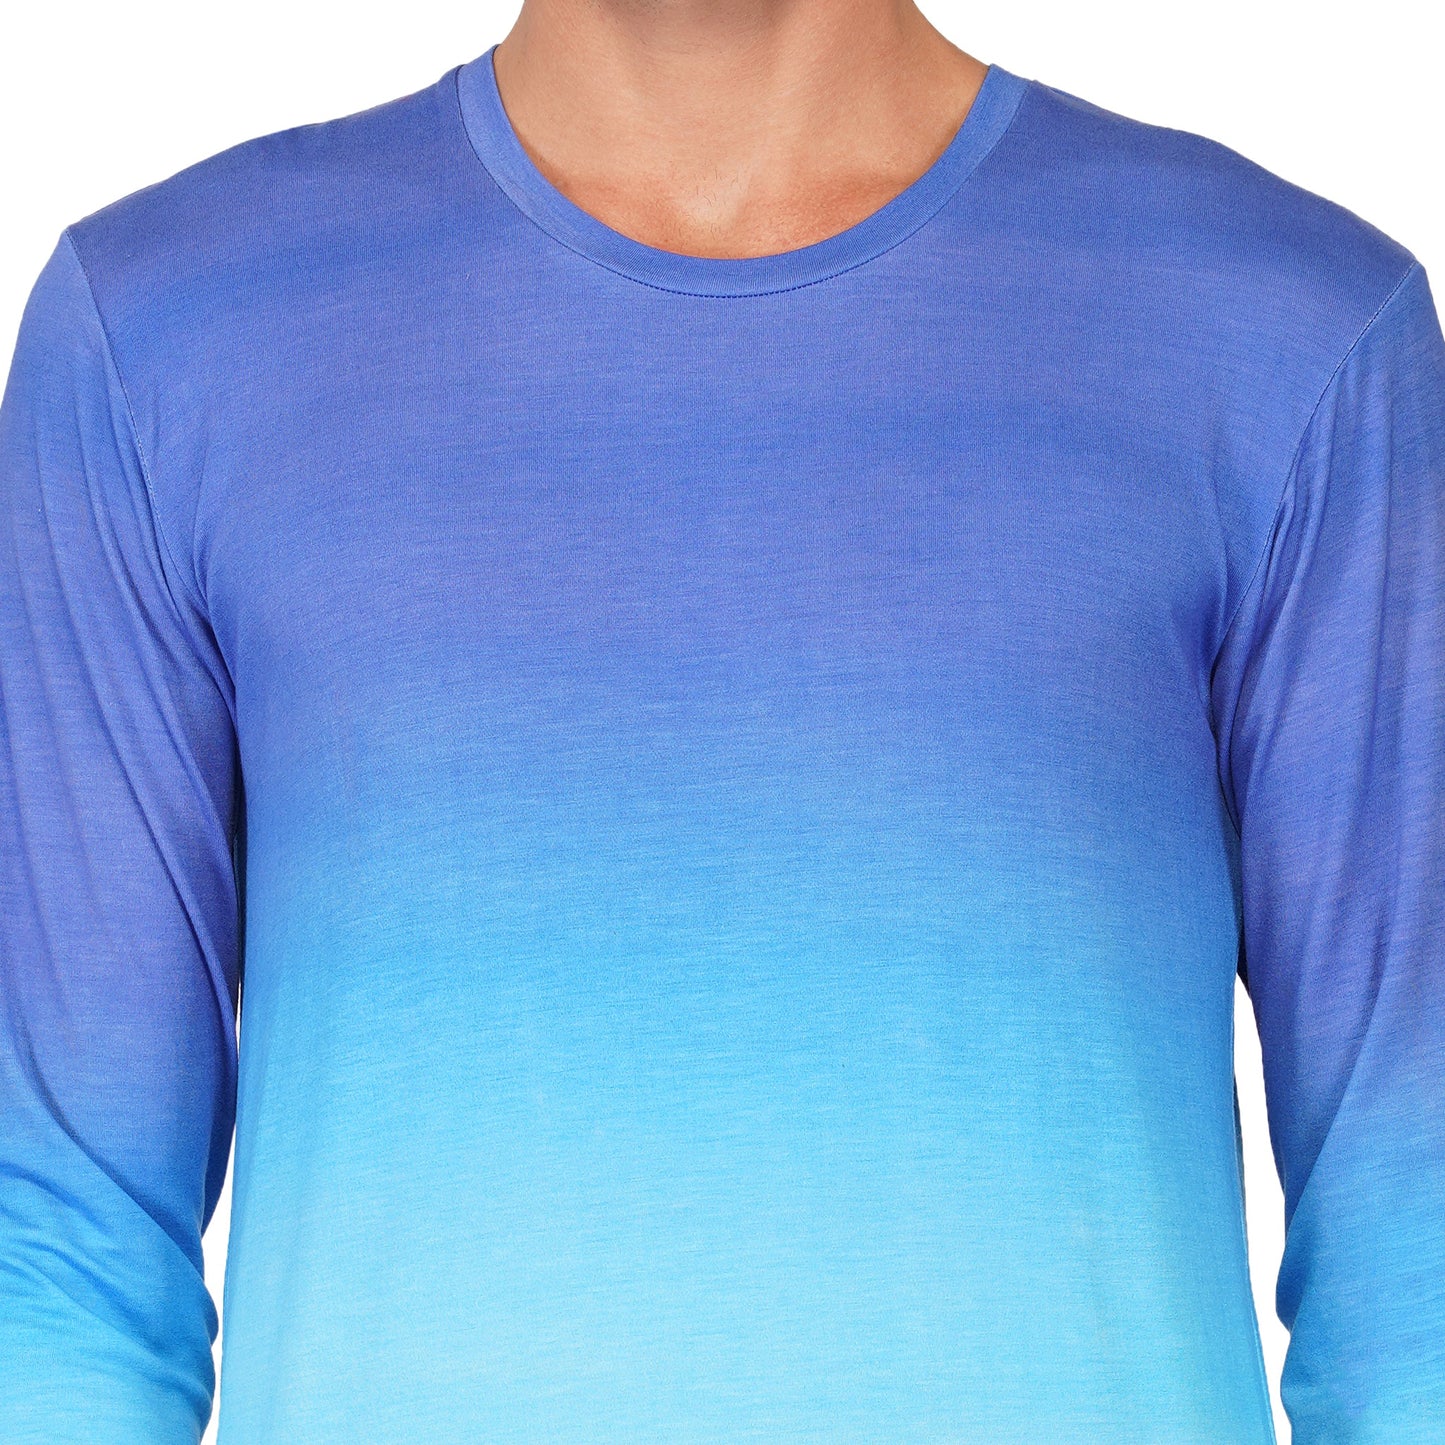 SLAY. Men's Blue to White Ombre Full Sleeves T Shirt